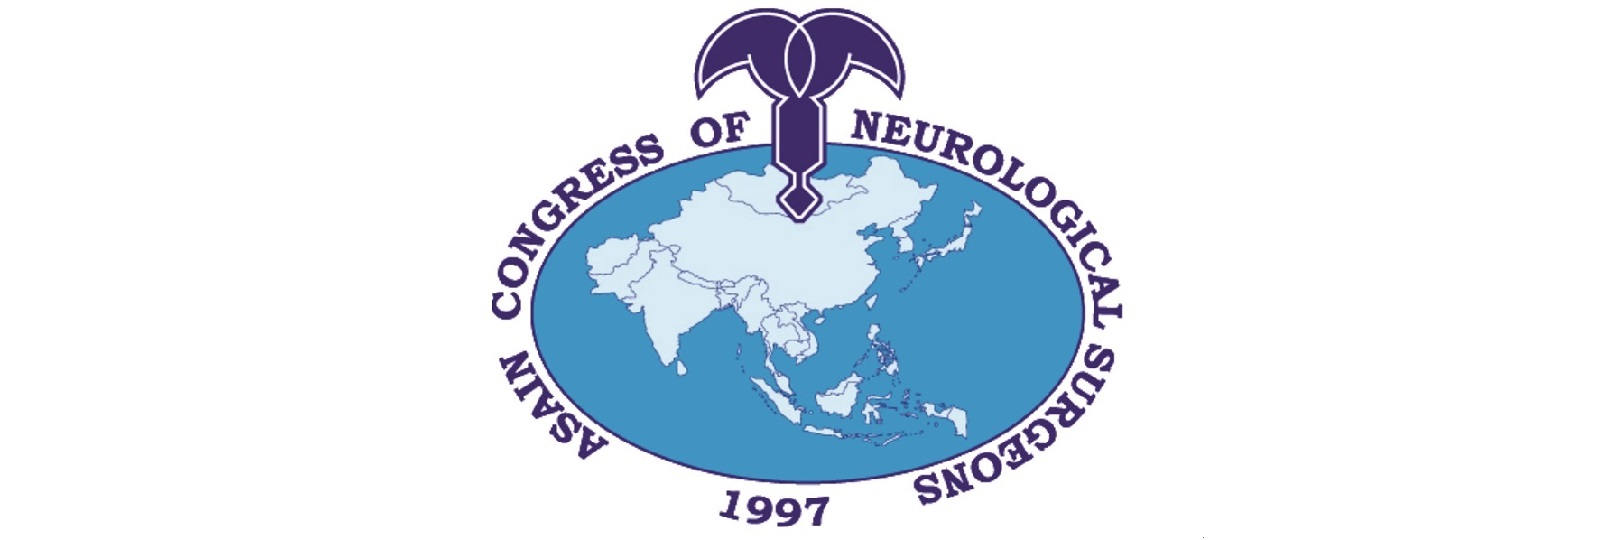 Asian Congress of Neurological Surgeons